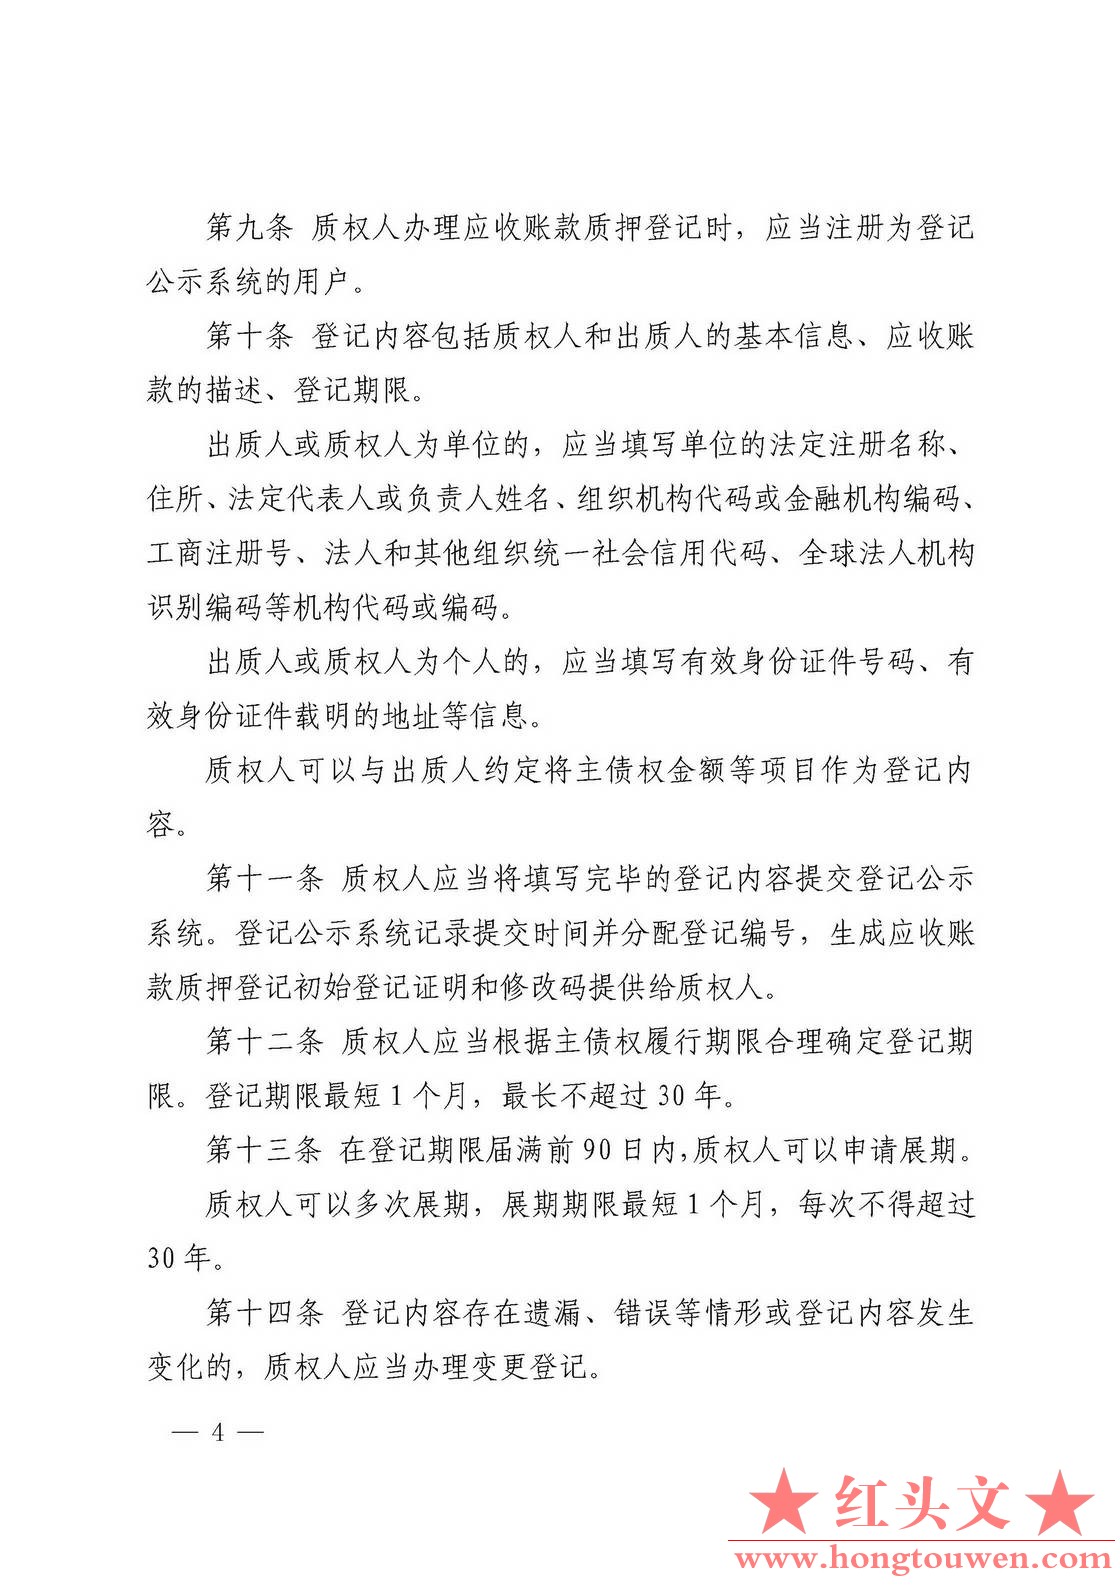 中国人民银行令[2019]第4号-应收账款质押登记办法_页面_4.jpg